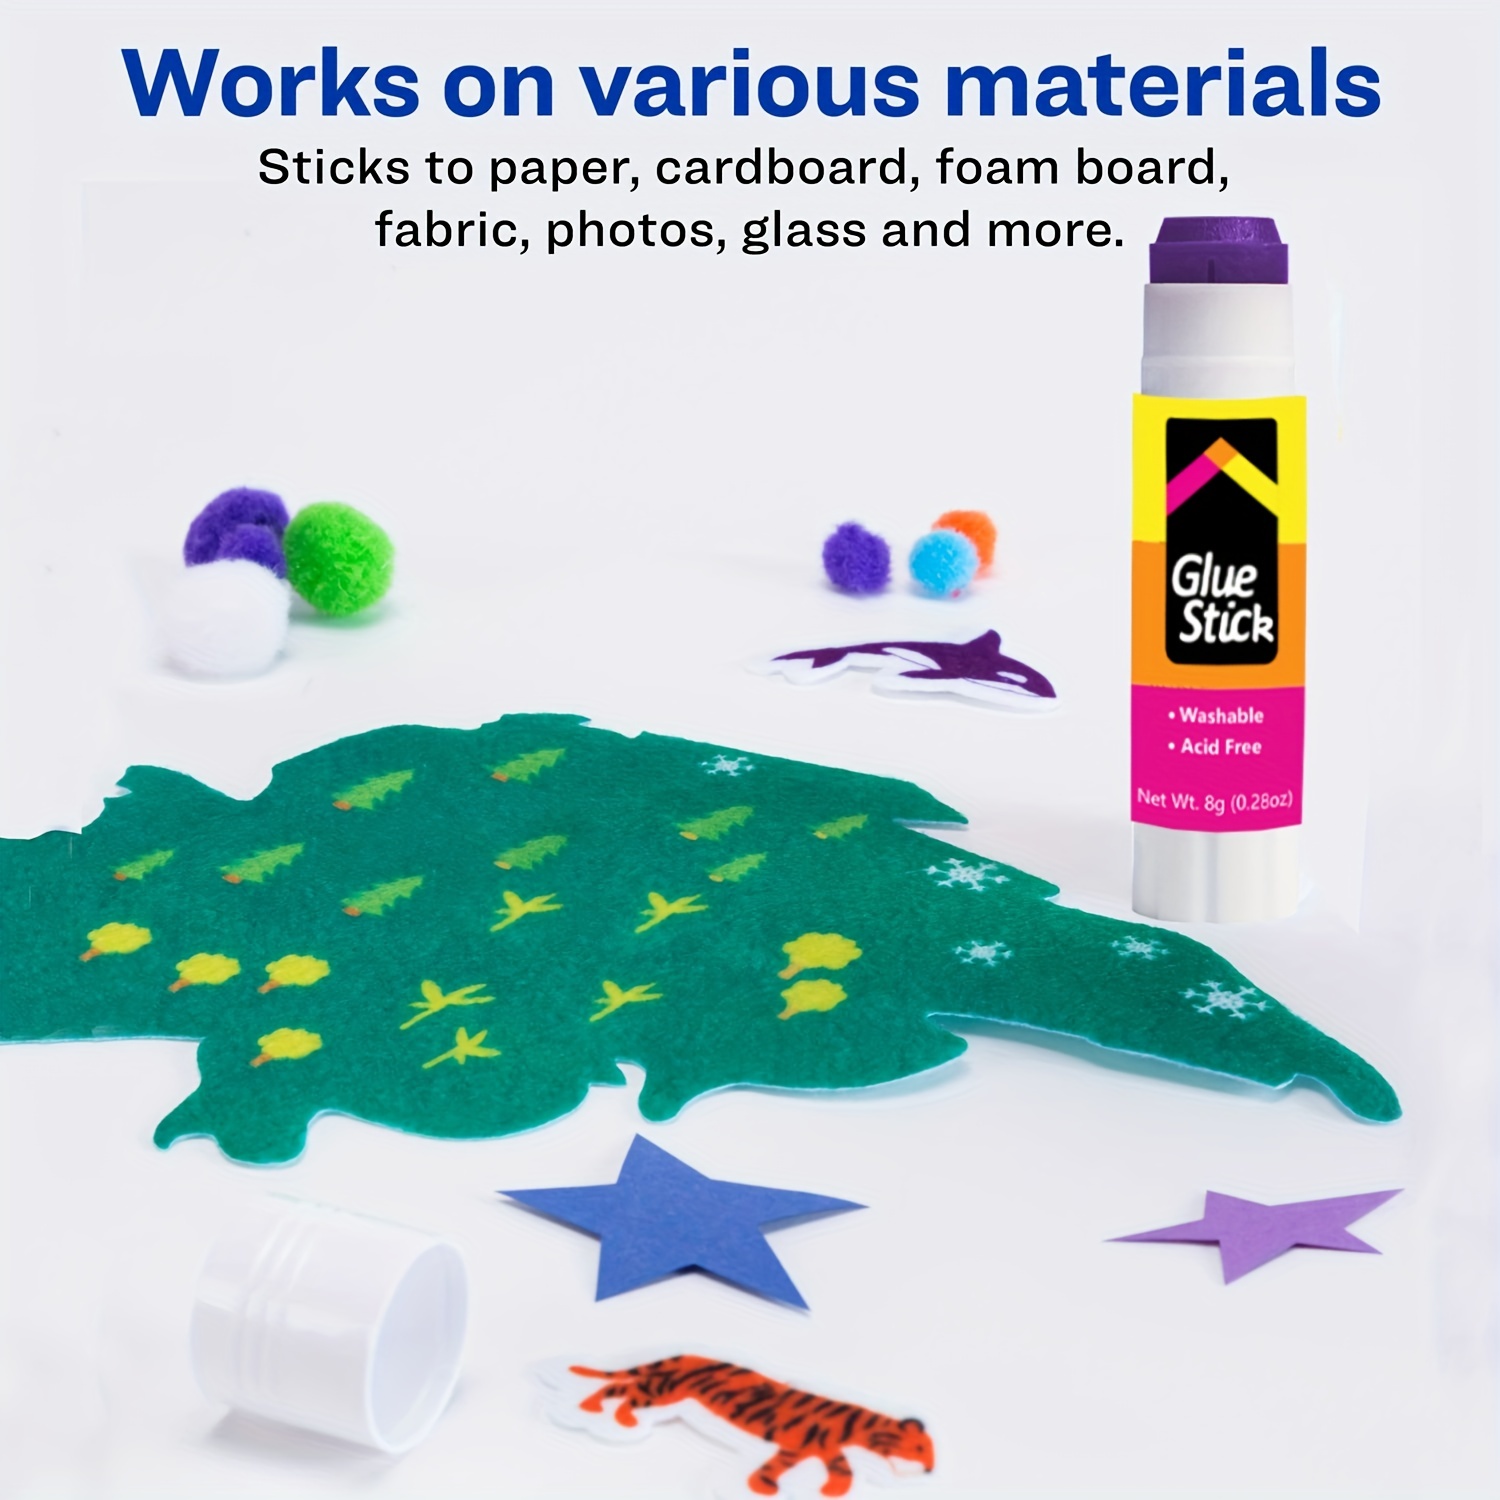 Disappearing Purple Glue Sticks,, Washable, Glue Sticks, School Glue  Sticks, Glue Sticks For Kids, Purple Glue Sticks, School Glue, Kids Glue  Sticks, Scrapbooking Glue, Craft Sticks - Temu Austria